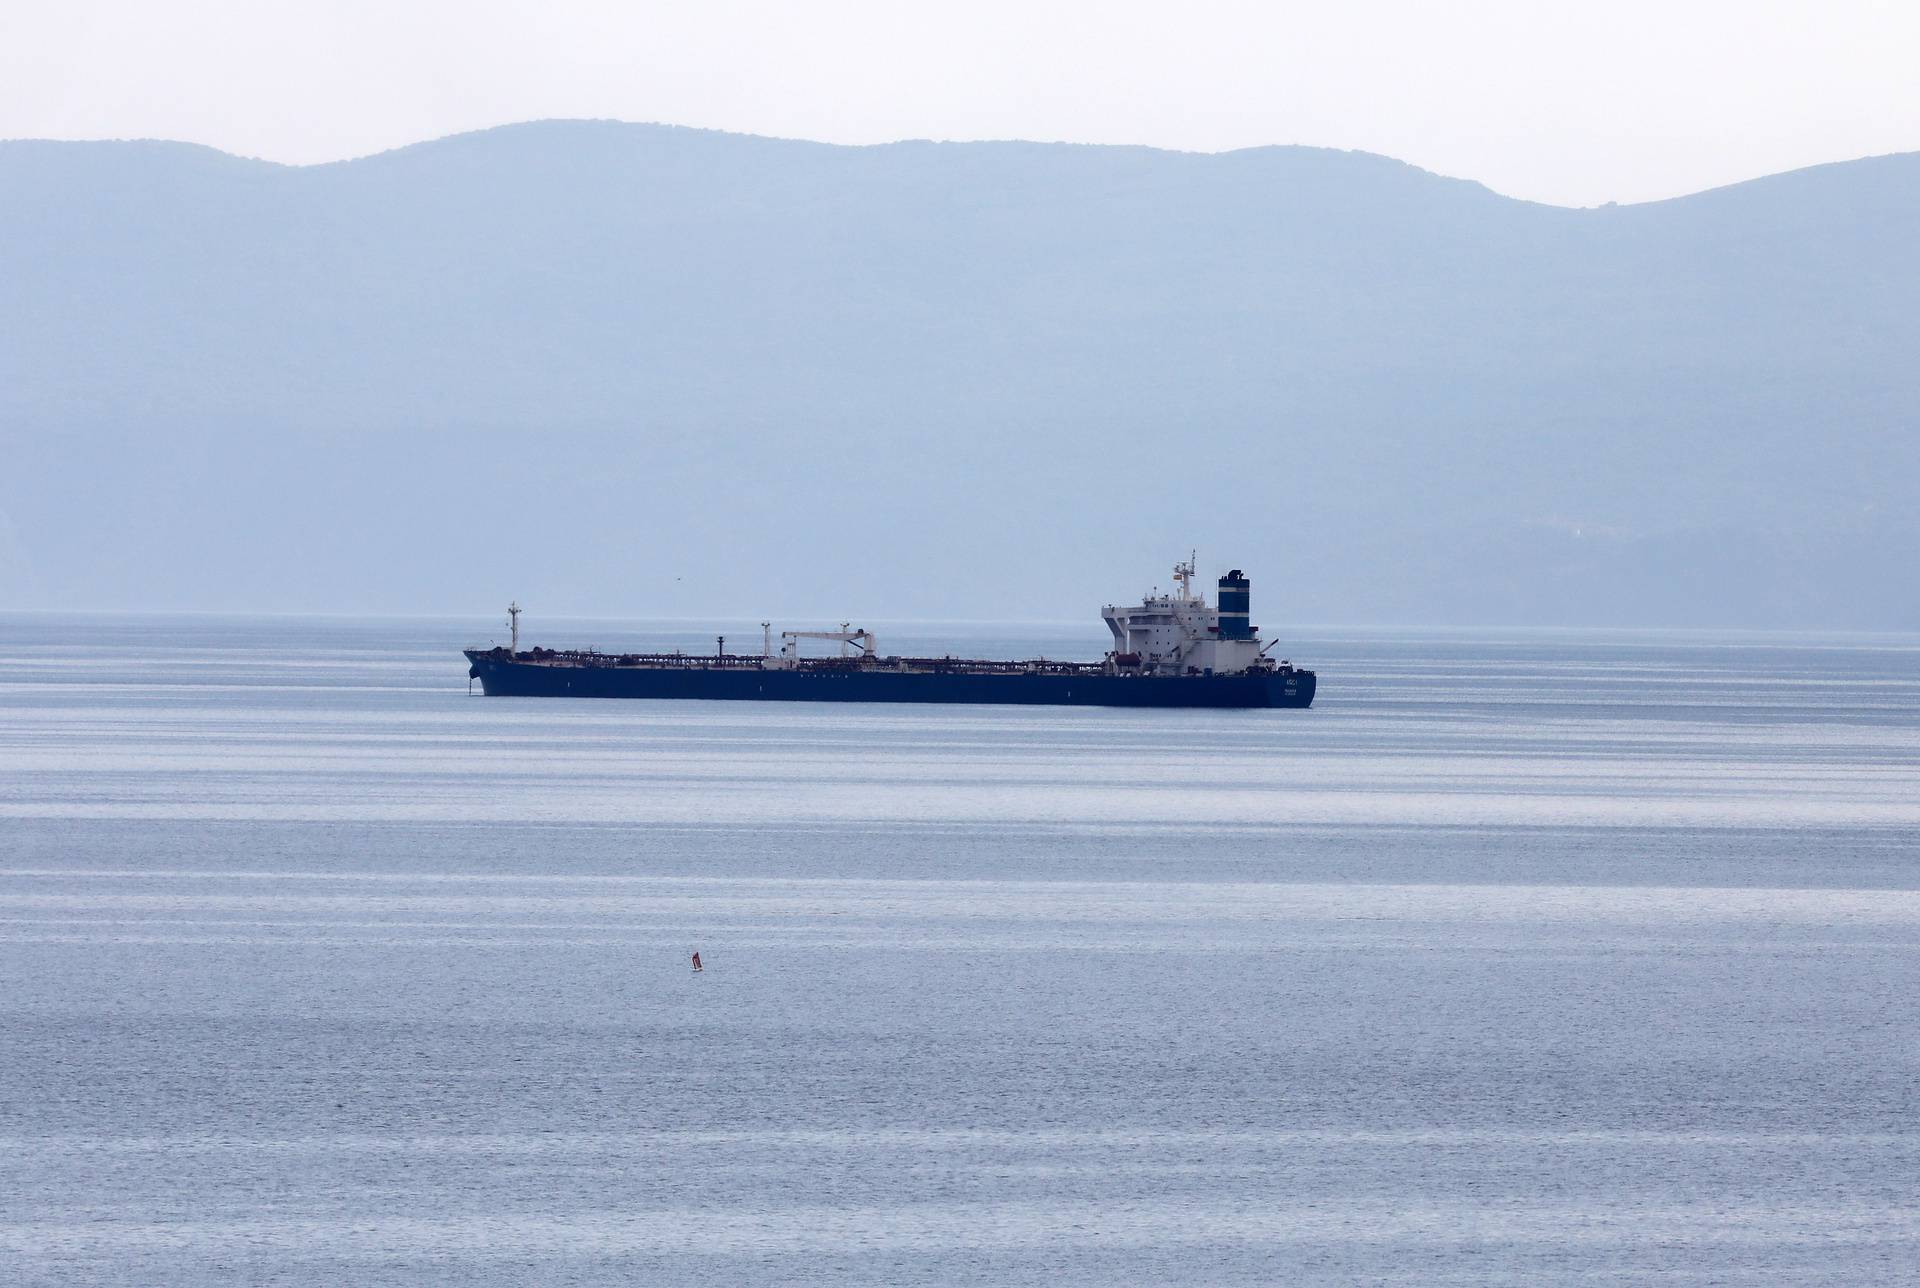 Fantomski tanker pun iranske nafte danima luta Jadranom